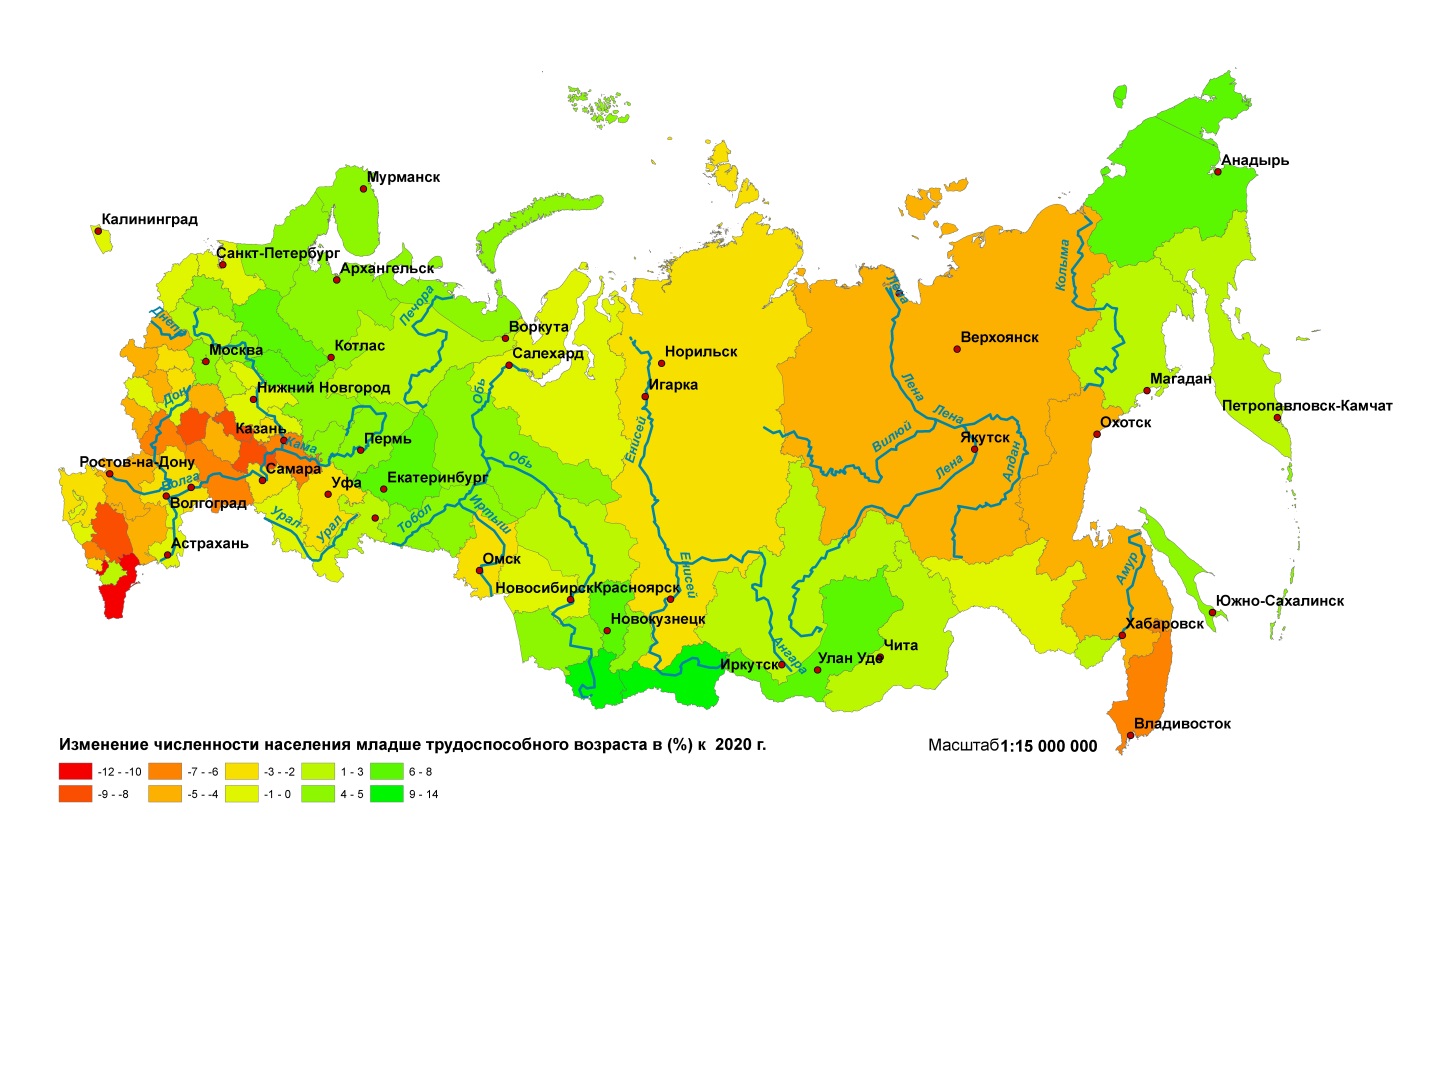 Карта возрастов россии. Карта трудоспособного населения России. Карта России по количеству населения в трудоспособном возрасте 2020. Карта России по трудоспособным возрастам 2020.